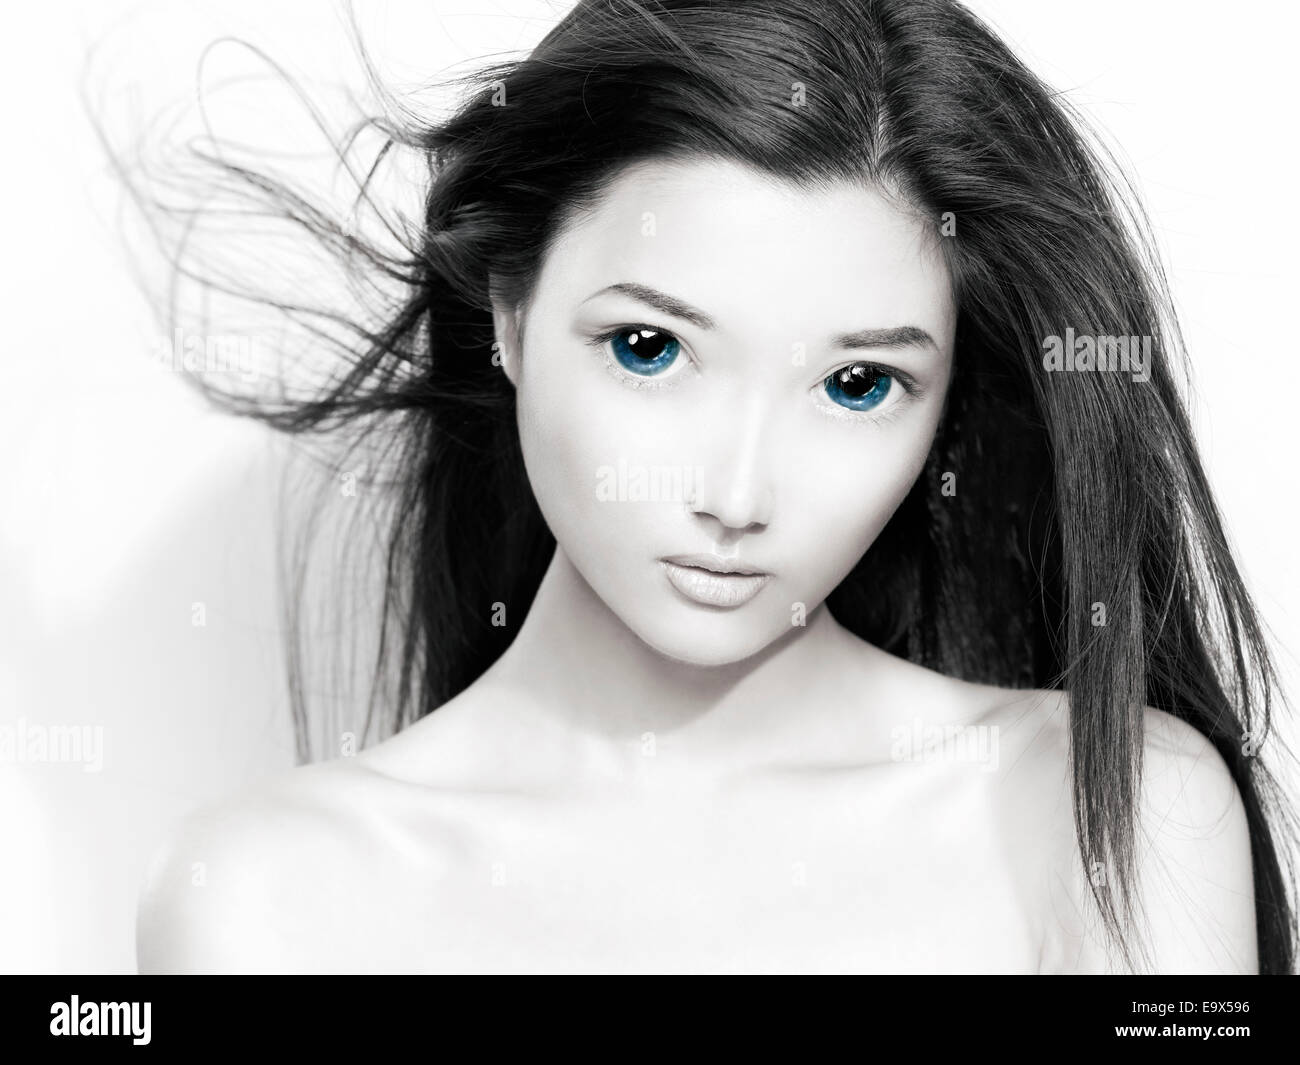 Bellezza ritratto di un simpatico giovane donna giapponese anime faccia con grandi occhi blu e capelli volanti. In bianco e nero con il colore blu. Foto Stock